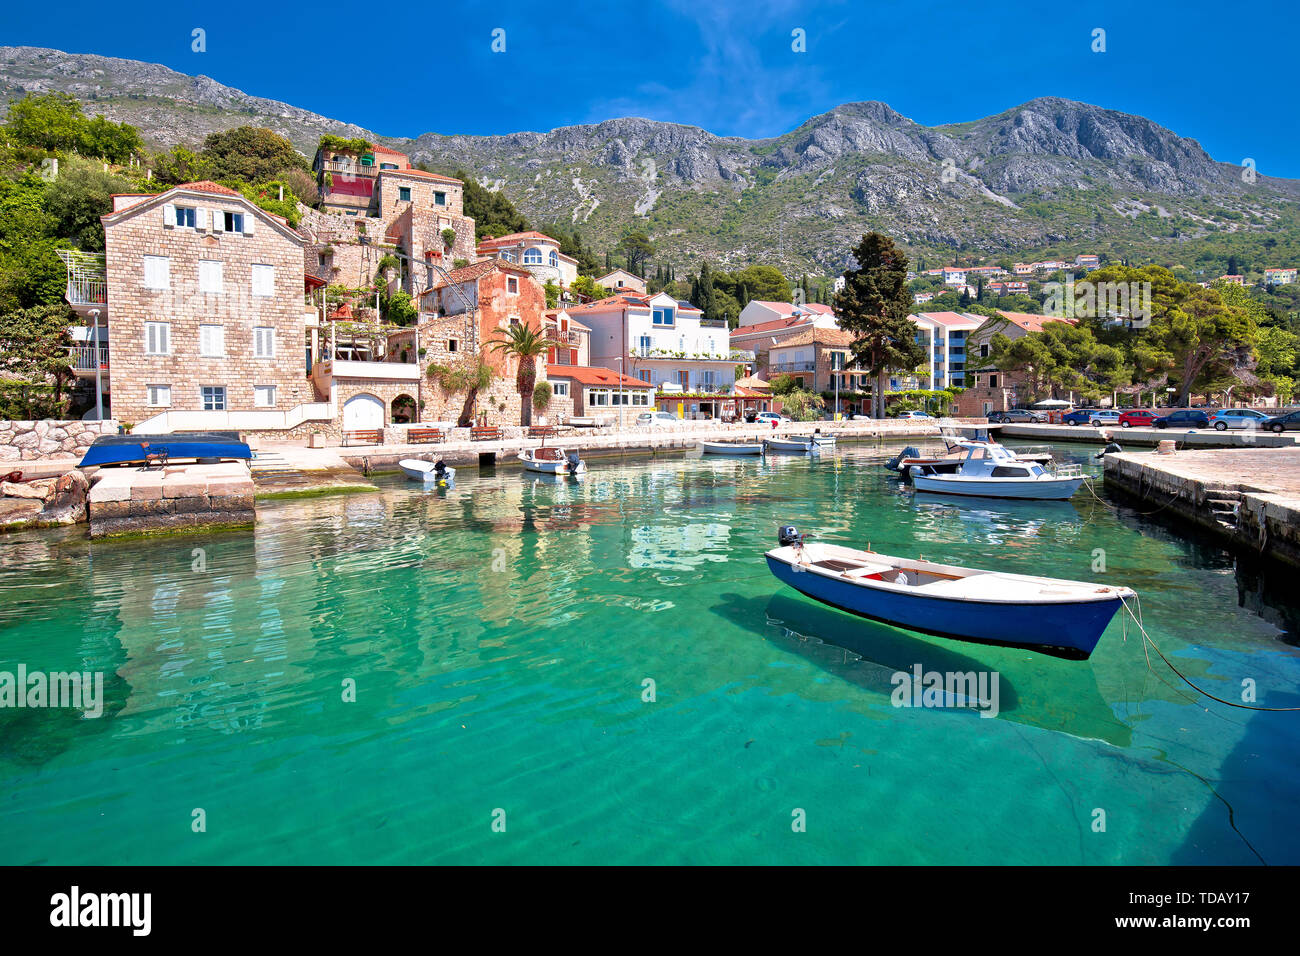 Village idyllique de Mlini Dubrovnik en vue de l'archipel, Dalmatie du sud Région de la Croatie Banque D'Images